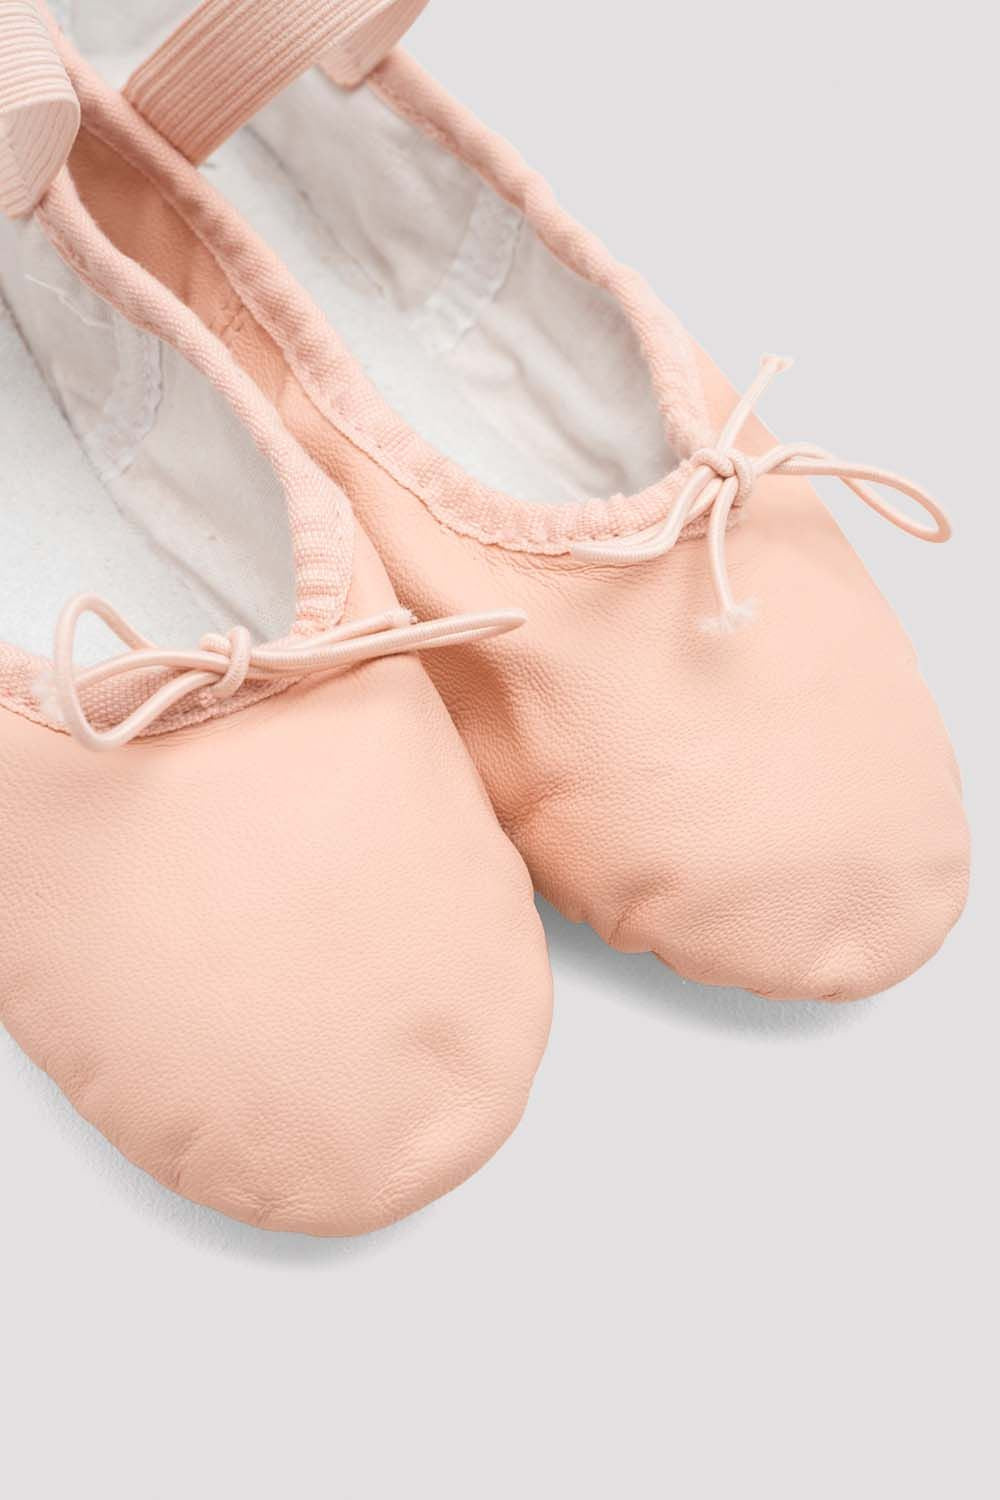 Dansoft Girls Ballet Shoes - S0205G